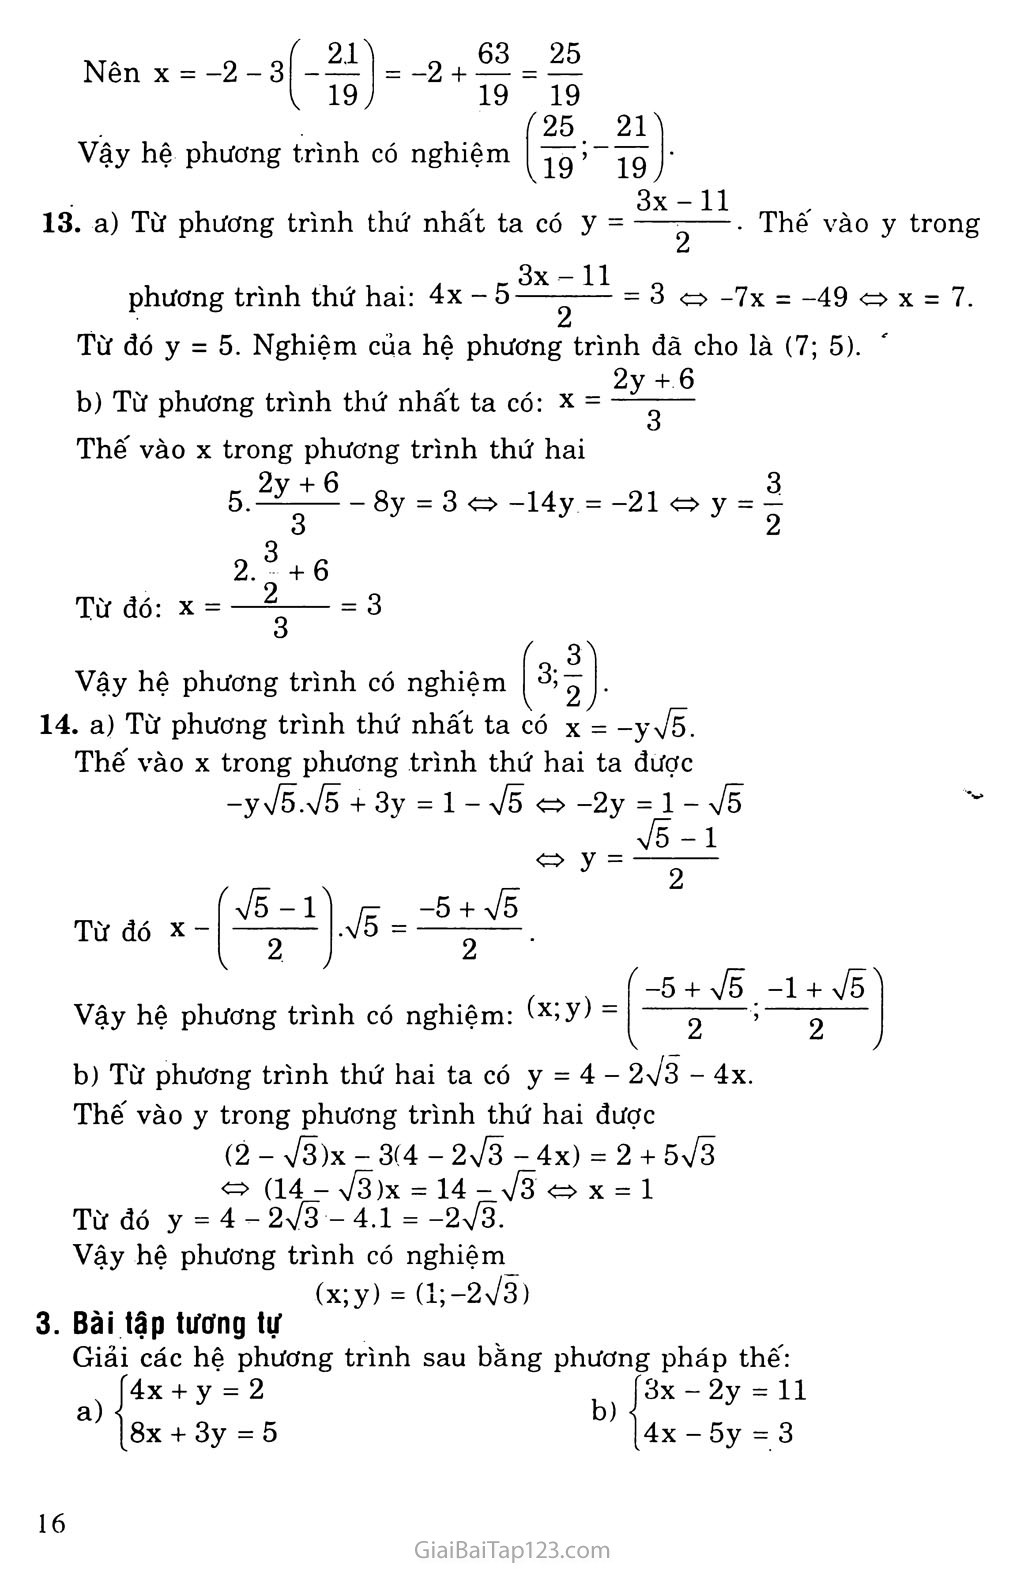 Bài 3. Giải hệ phương trình bằng phương pháp thay thế trang 3